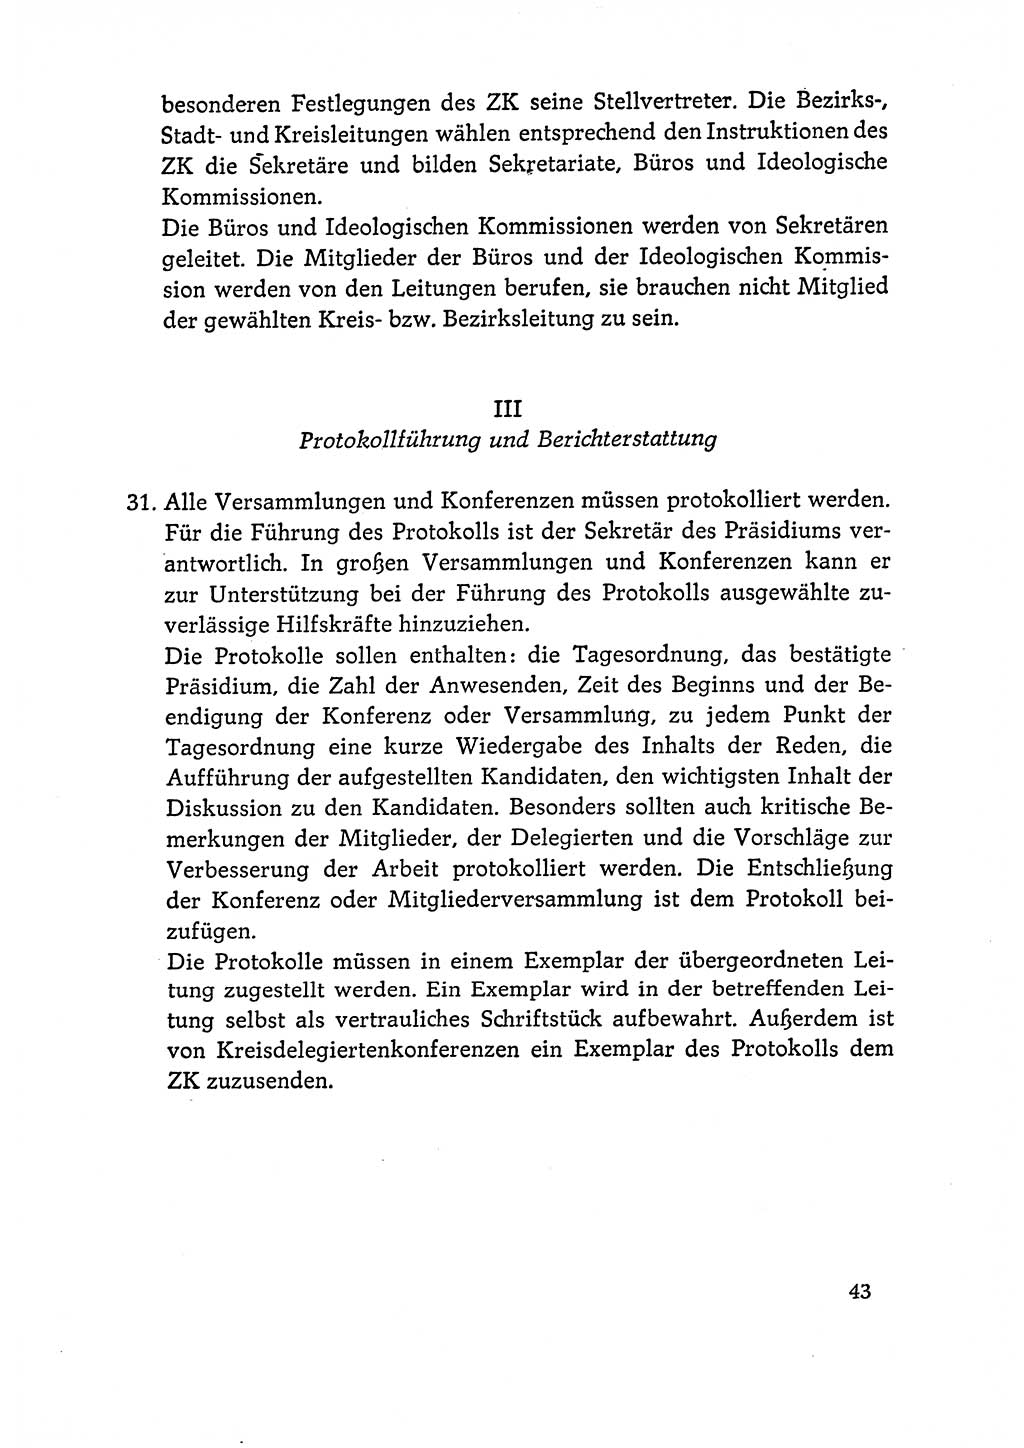 Dokumente der Sozialistischen Einheitspartei Deutschlands (SED) [Deutsche Demokratische Republik (DDR)] 1964-1965, Seite 43 (Dok. SED DDR 1964-1965, S. 43)